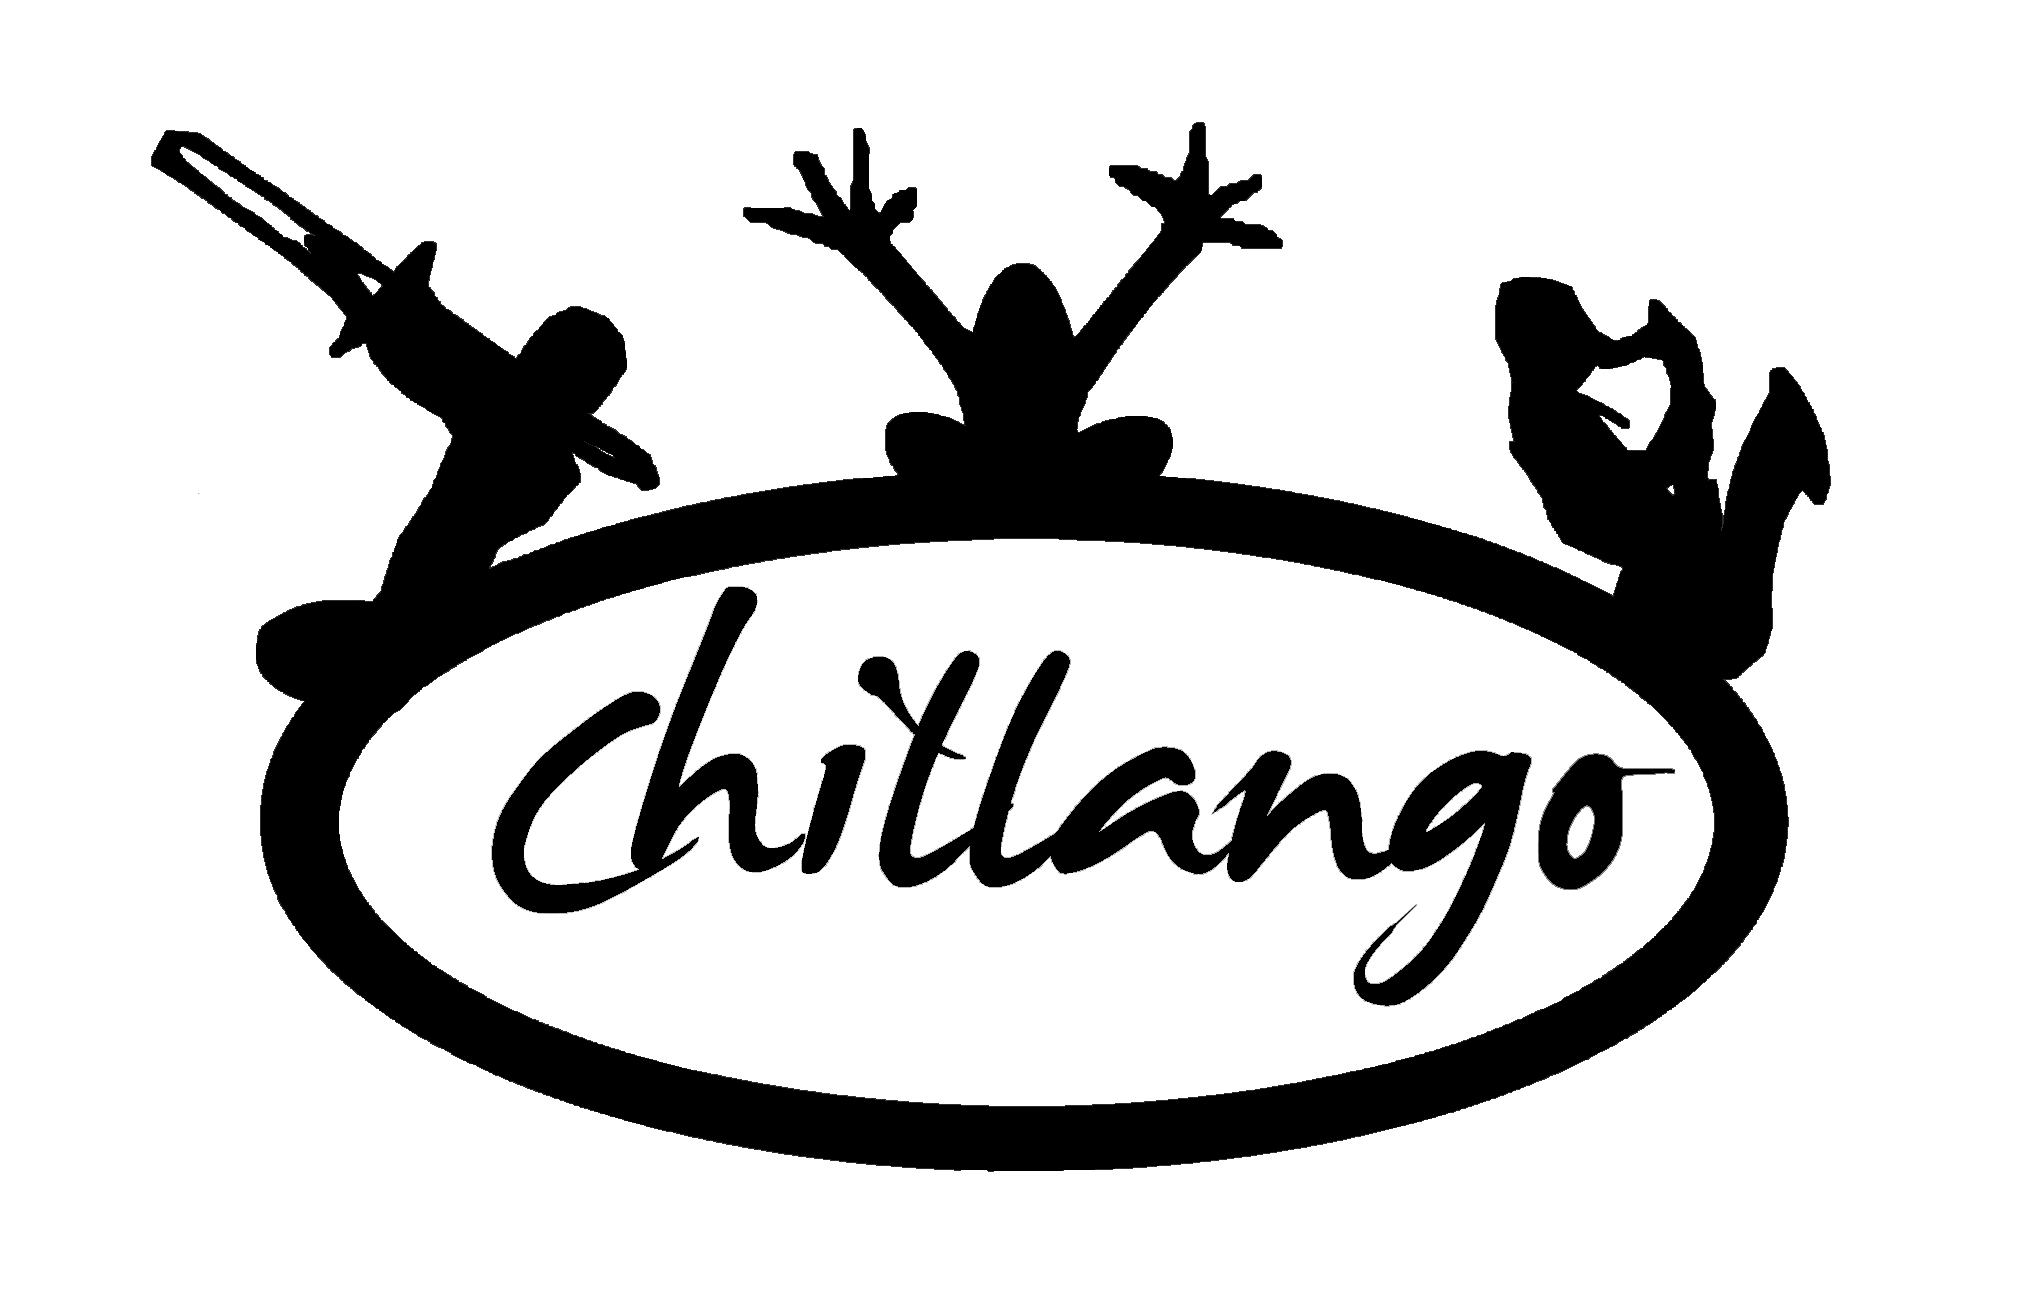 ver + información para la contratacion de Chillango artistas de Malaga